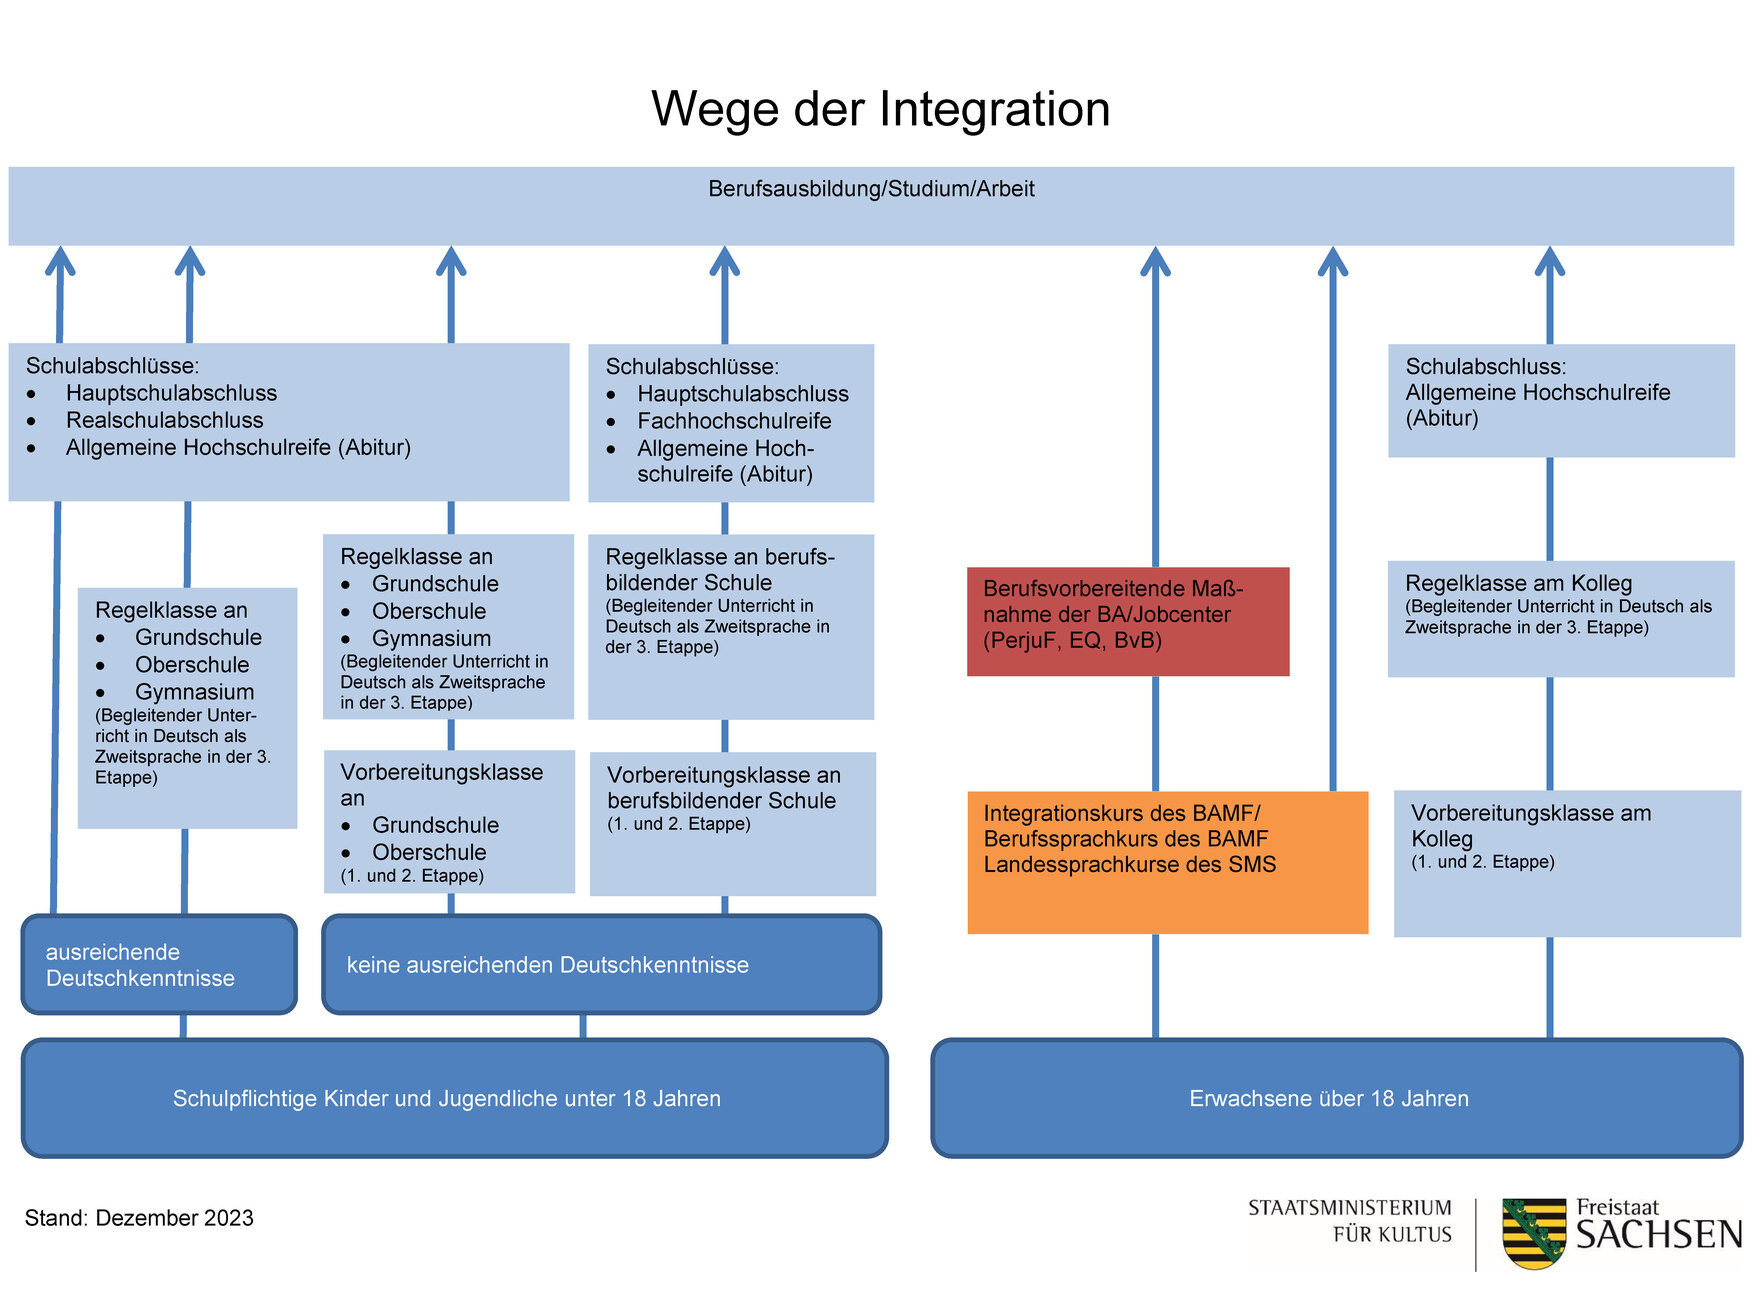 Wege der Integration in Schule, Ausbildung und Arbeit